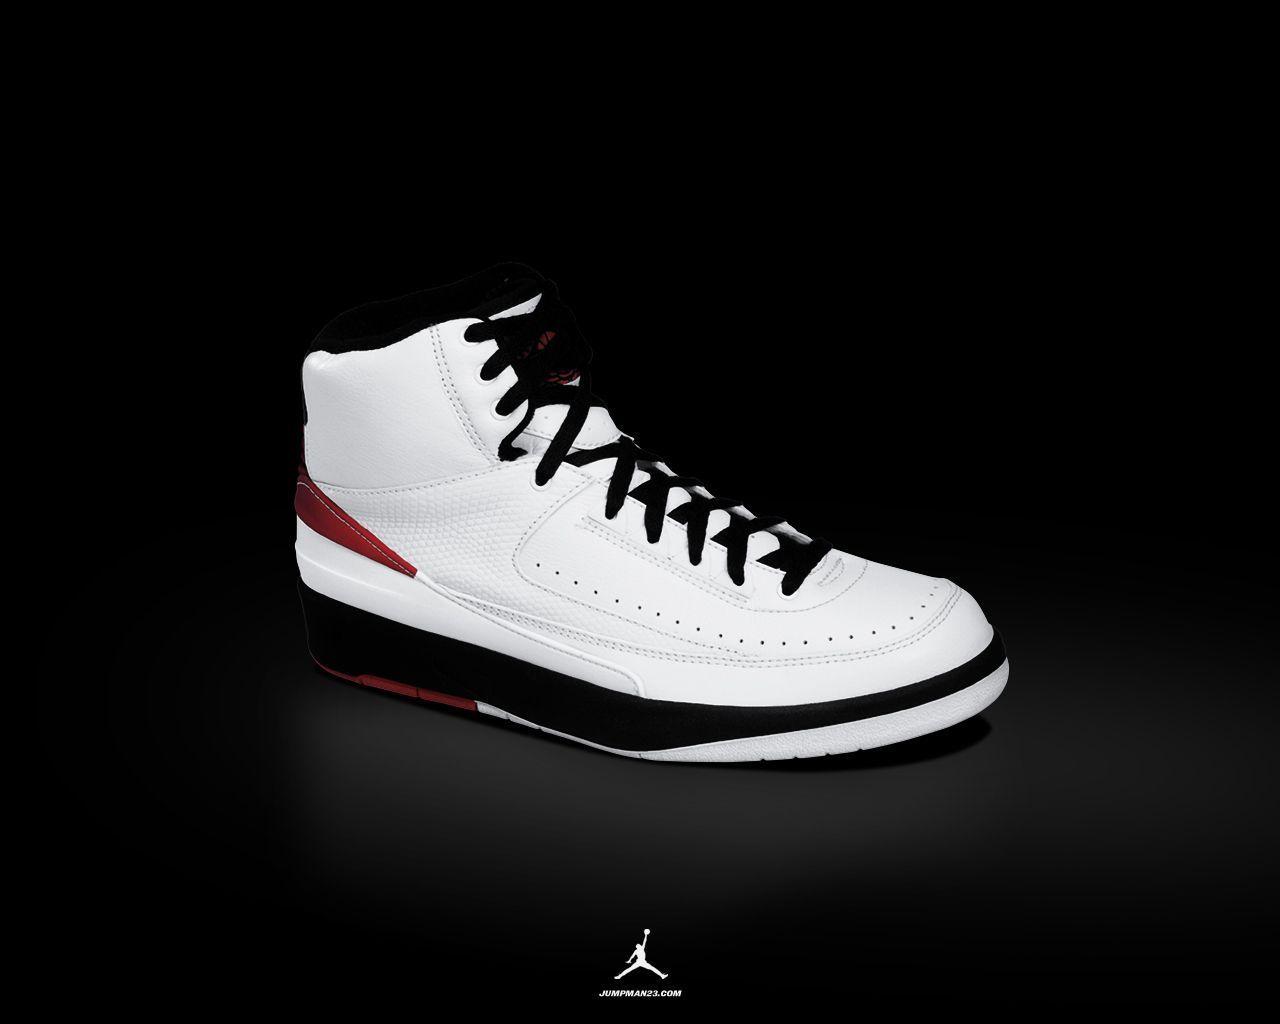 Image For > Air Jordan Shoes Wallpapers